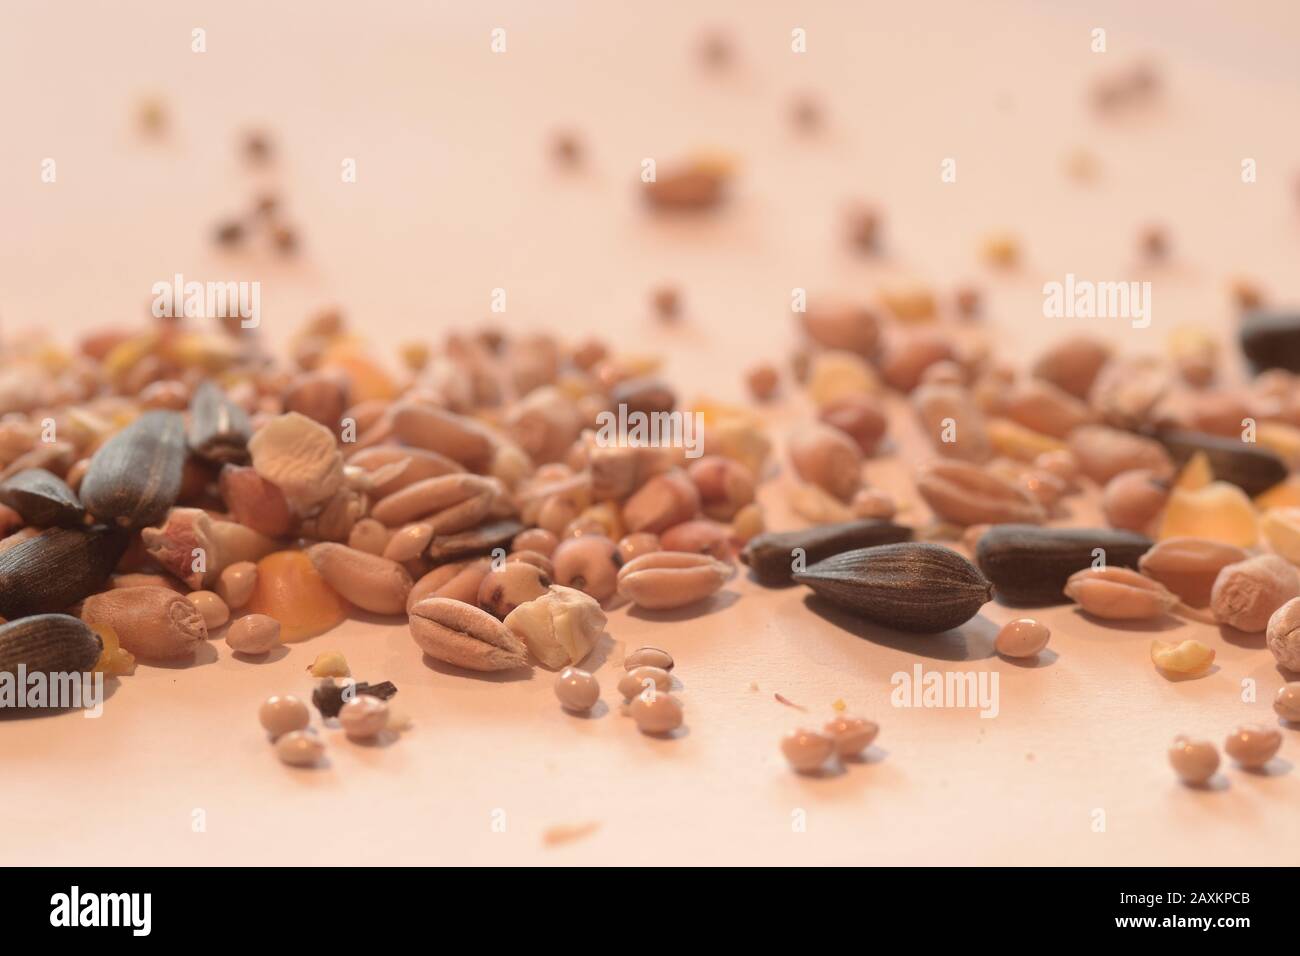 Selektive Fokus Schuss von verschiedenen Samen und Körner auf ein Weiße Oberfläche Stockfoto